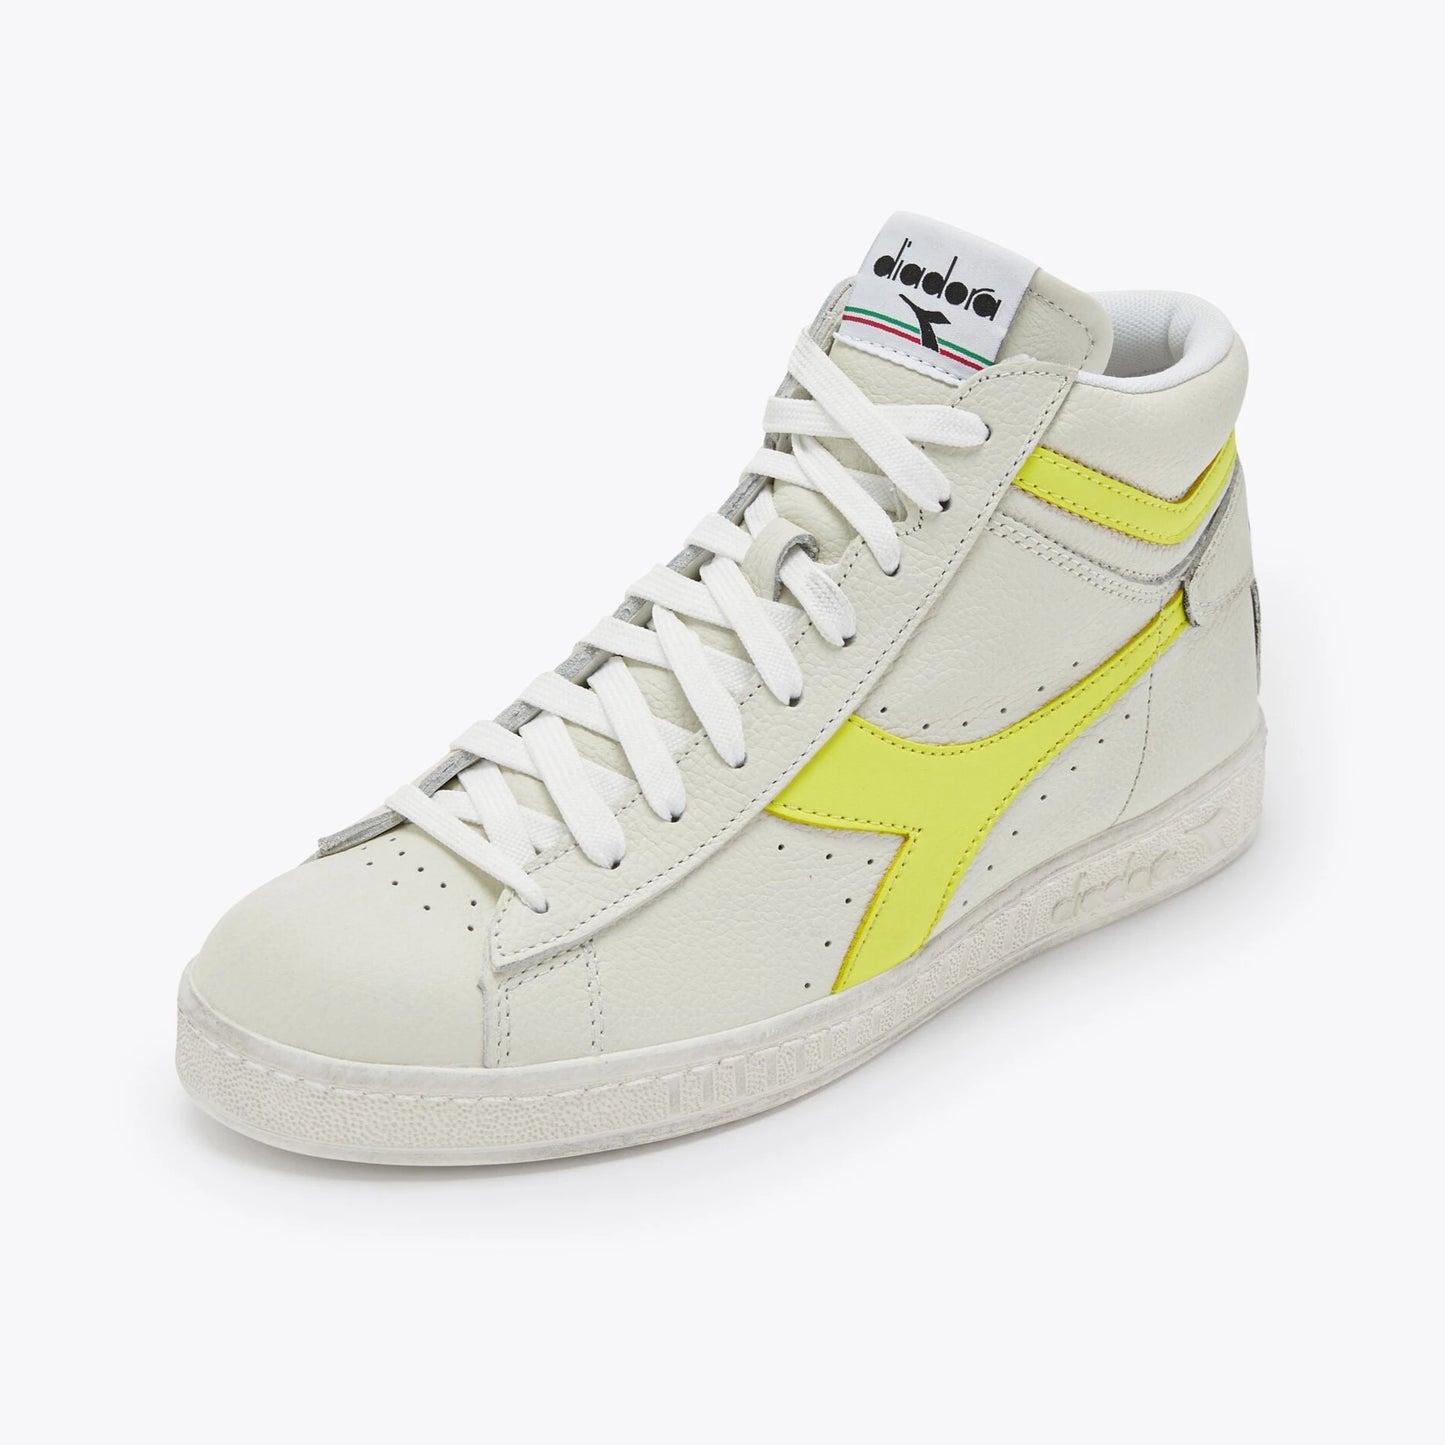 Sneakers De La Marca Diadora Para Unisex Modelo Game L High Fluo Wax- White/Yellow Fluo En Color Amarillo